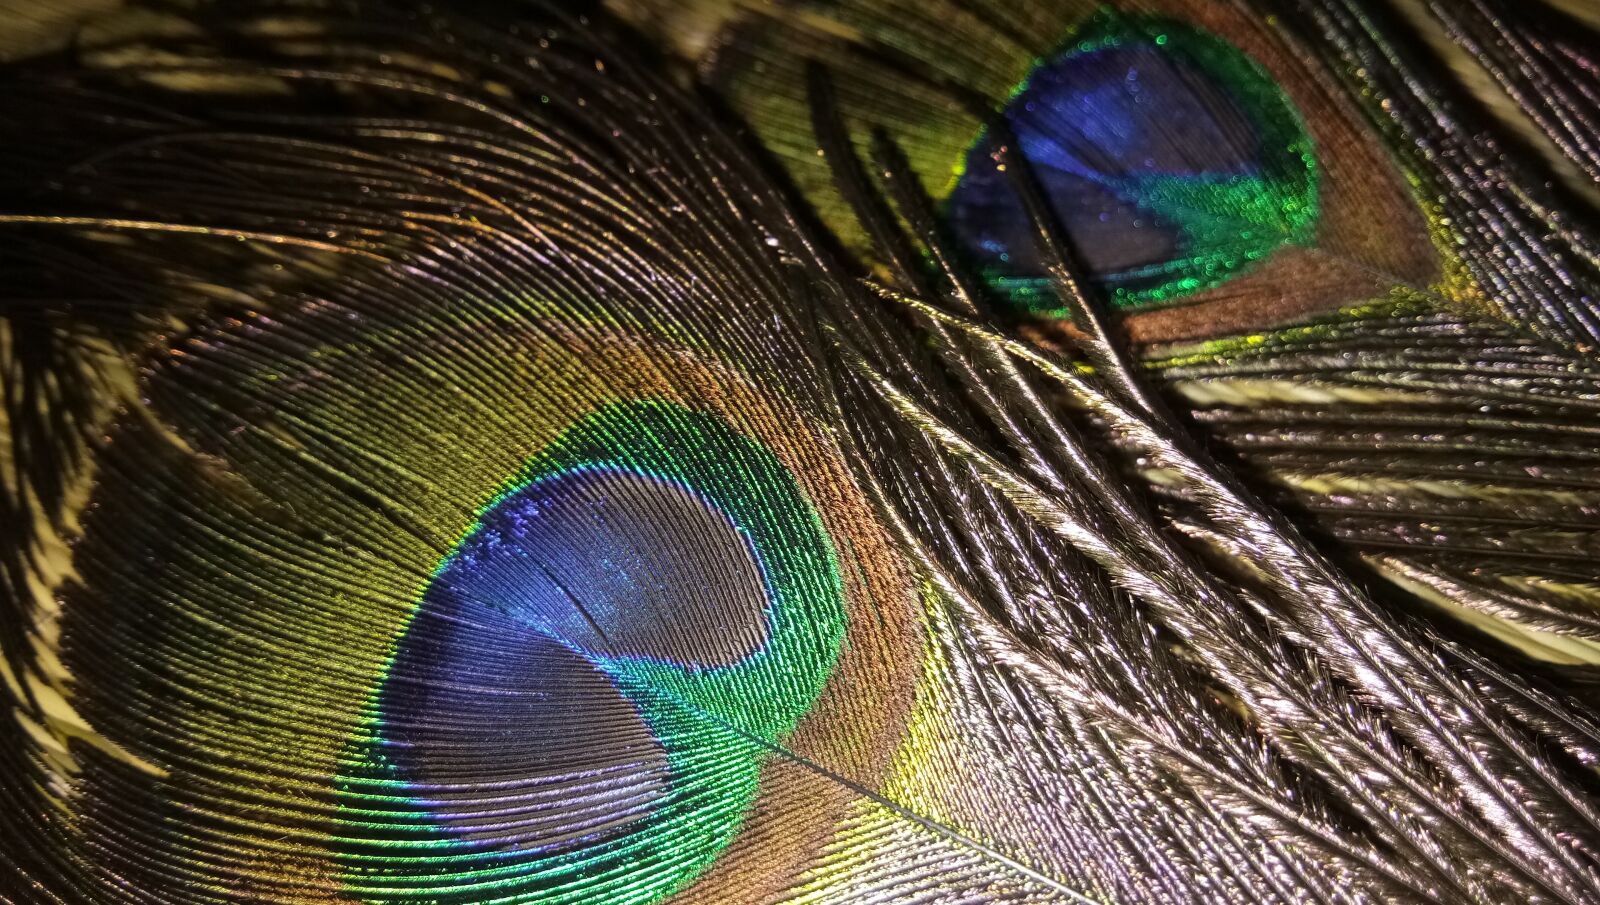 vivo 1601 sample photo. Feather, peacock, bird photography